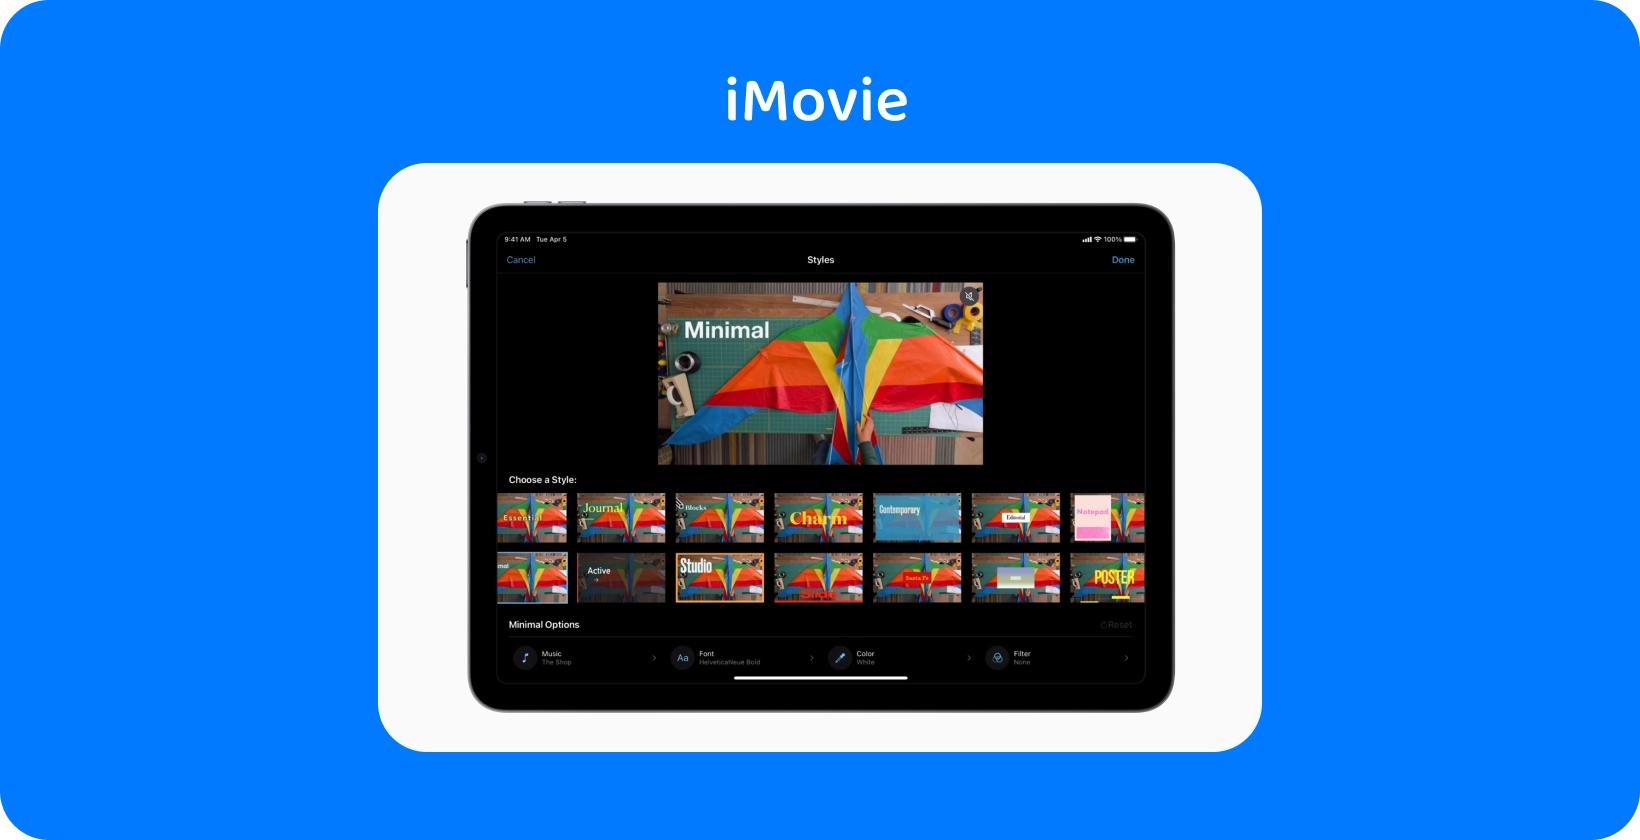 iMovie tahvelarvutis, kus kuvatakse erinevaid videotöötlusstiile, kusjuures värviline loheprojekt on seatud teemale "Minimaalne".